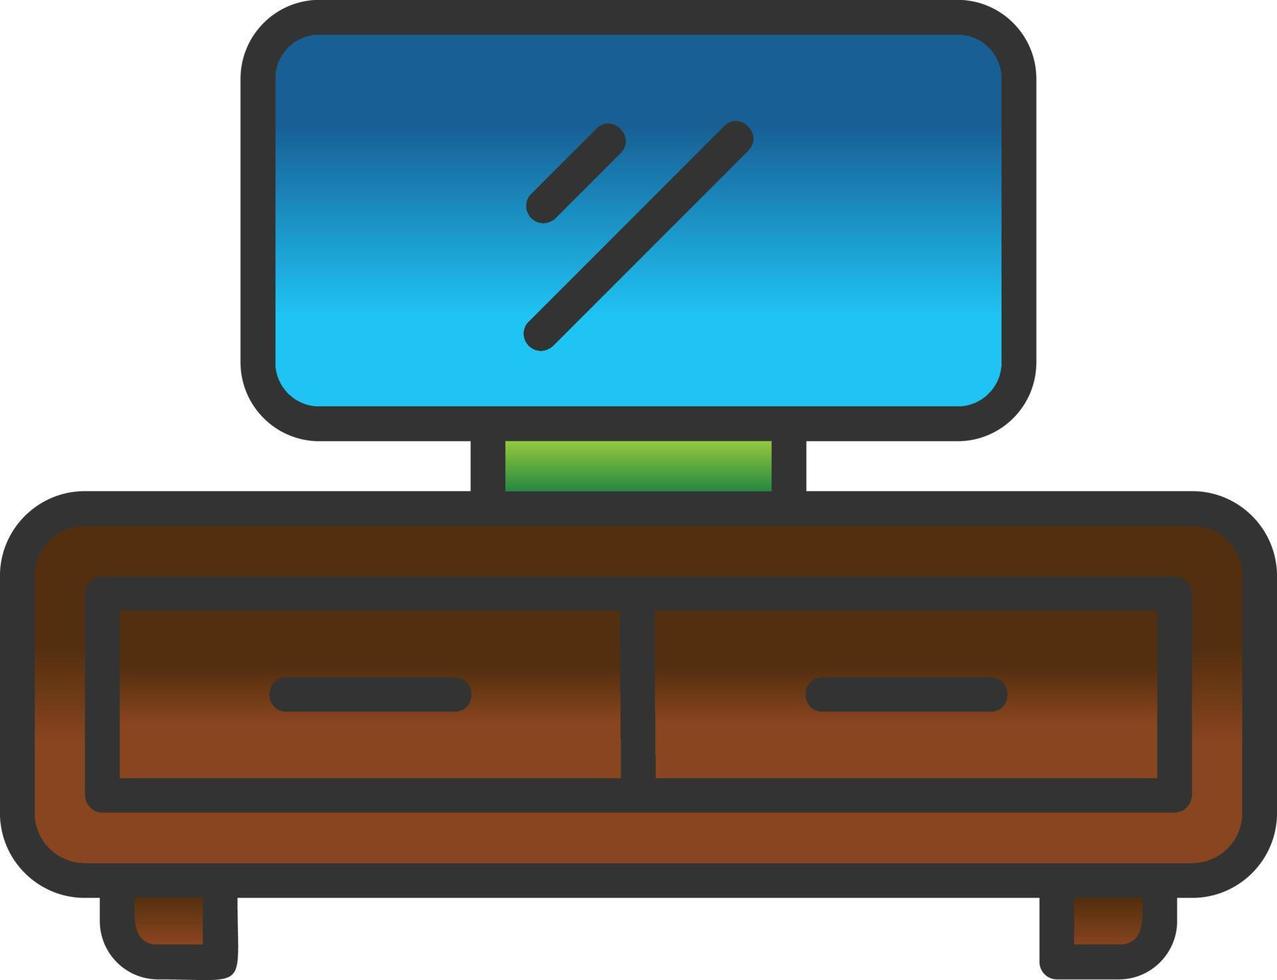 design de ícone de vetor de mesa de tv